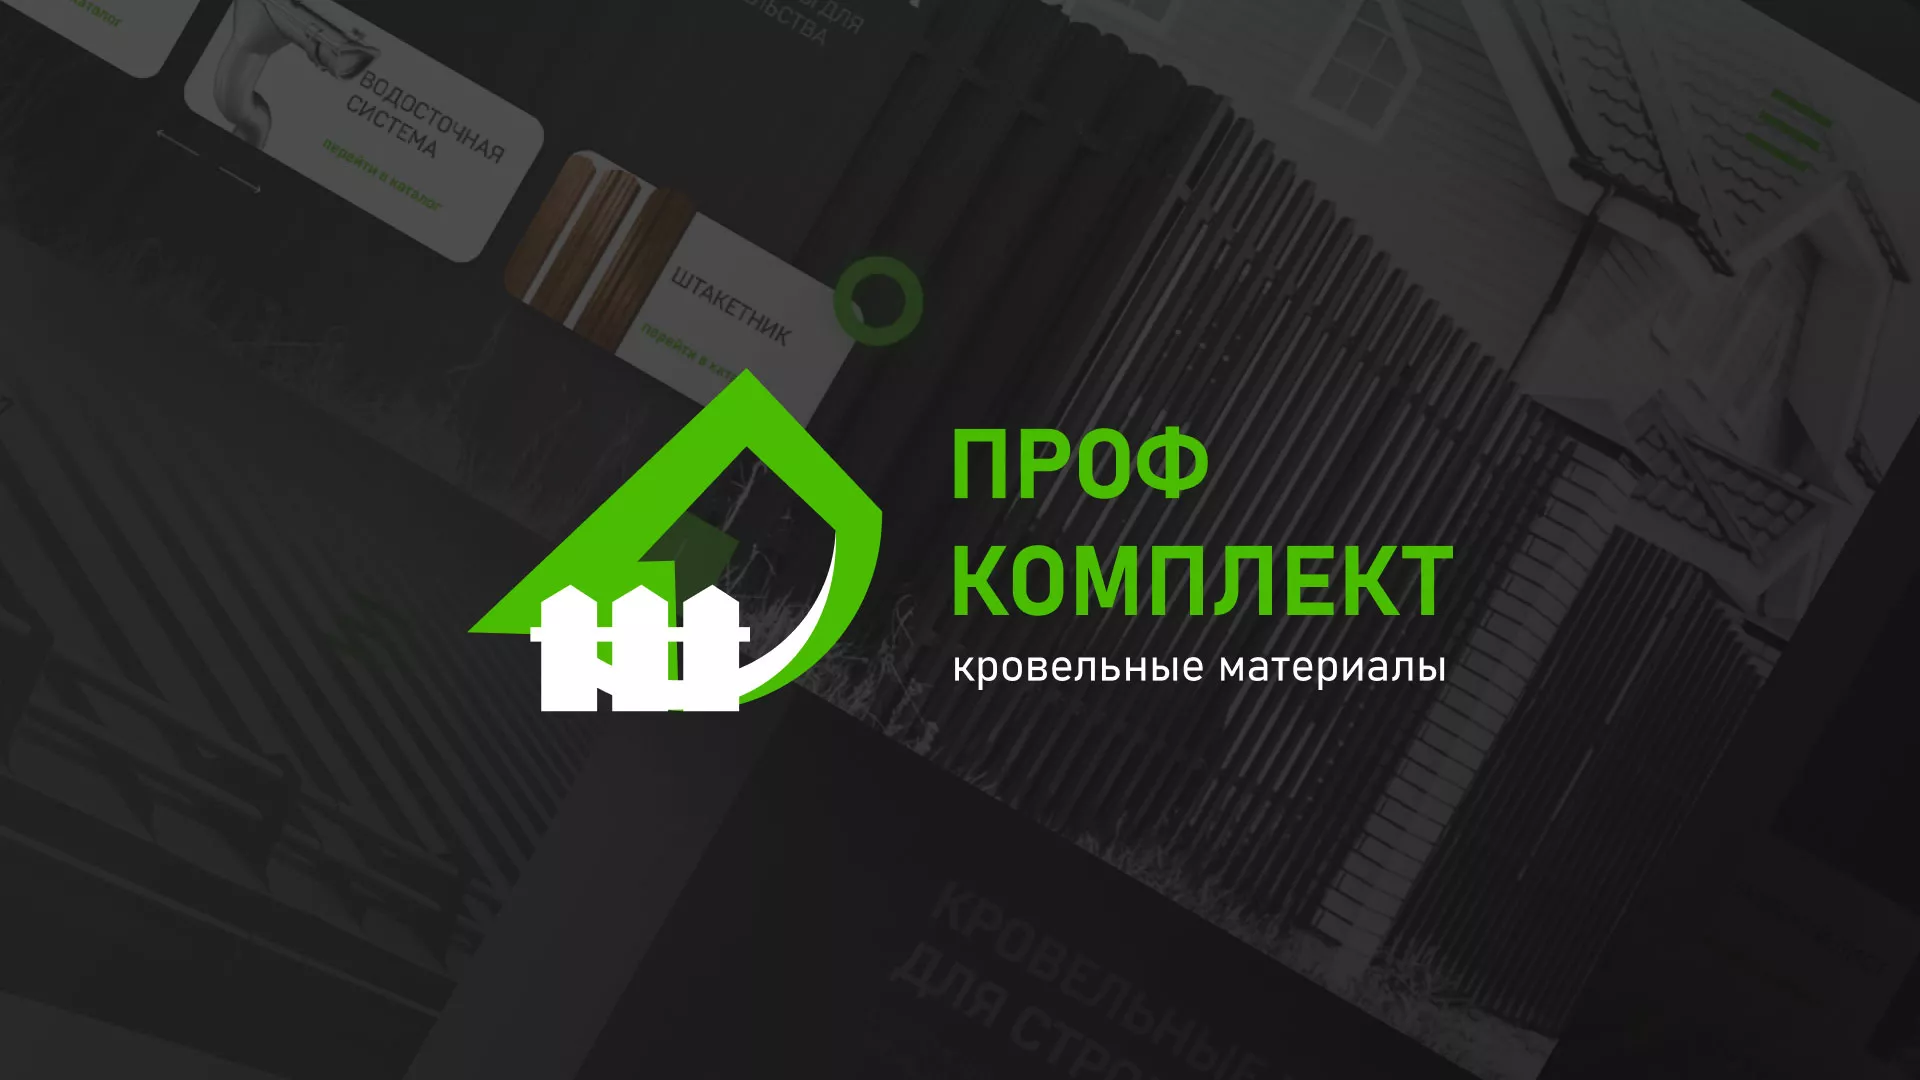 Создание сайта компании «Проф Комплект» в Болгаре